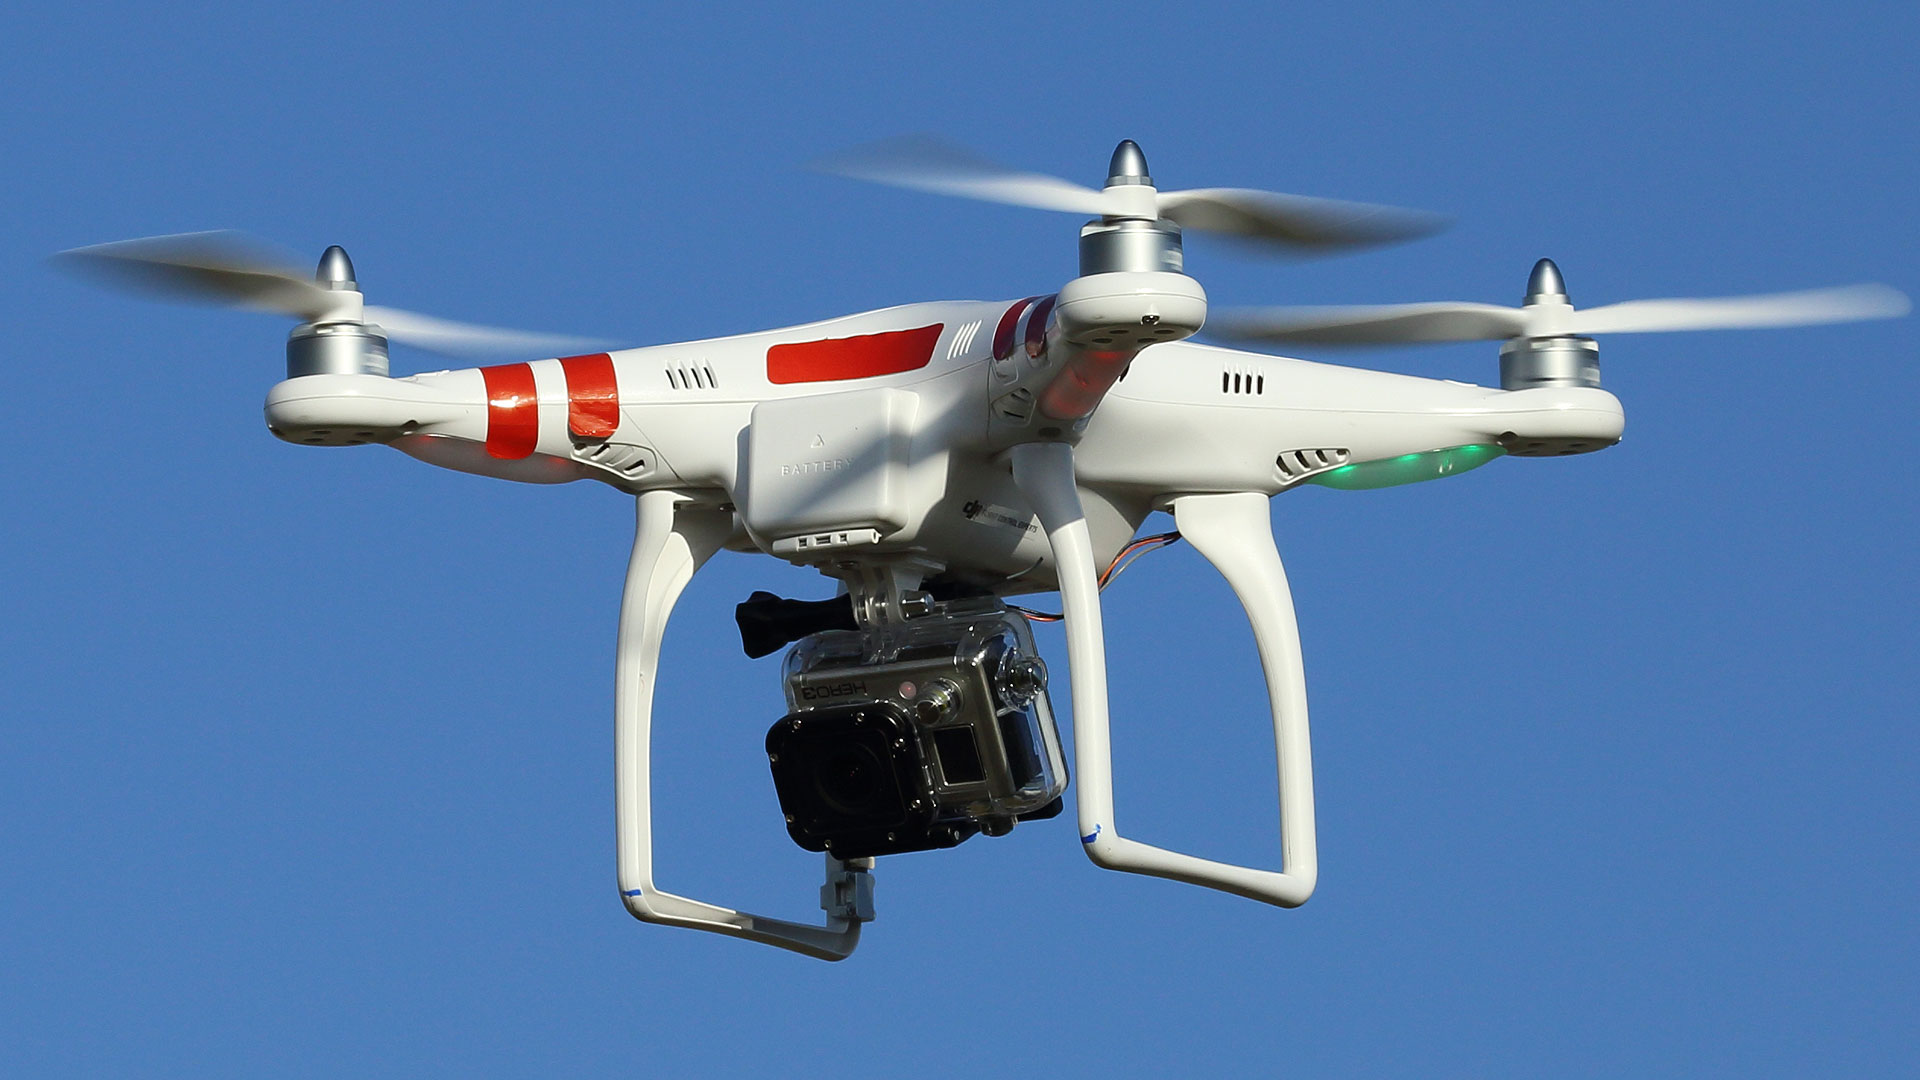 Un drone pour débutant, le DJI Phantom. Le drone DJI Phantom est un drone d’agrément sous lequel il est possible d'adapter une mini-caméra. Il pèse 880 grammes, mesure 17 centimètres de haut et 39 x 39 cm de côté. Il se dirige à l’aide d’une télécommande chargée de quatre piles AA et est équipé de LED&nbsp;colorées vertes et rouges indiquant la direction de vol. La distance maximale qui permet de garder le contact est d’environ 1.000 mètres. Sa vitesse en vol horizontal est de 10 mètres par seconde (m/s) et en vertical de 6 m/s. Il est équipé d’un système de Contrôle intelligent d’orientation (CIO) et d’un GPS. Son temps de vol maximum varie entre 10 et 15 minutes. Lorsque la communication entre le contrôle principal et l’émetteur est coupée, le système GPS ramène automatiquement l’engin à son pilote et le pose au sol.
© Don McCullough, CC by-nc 2.0